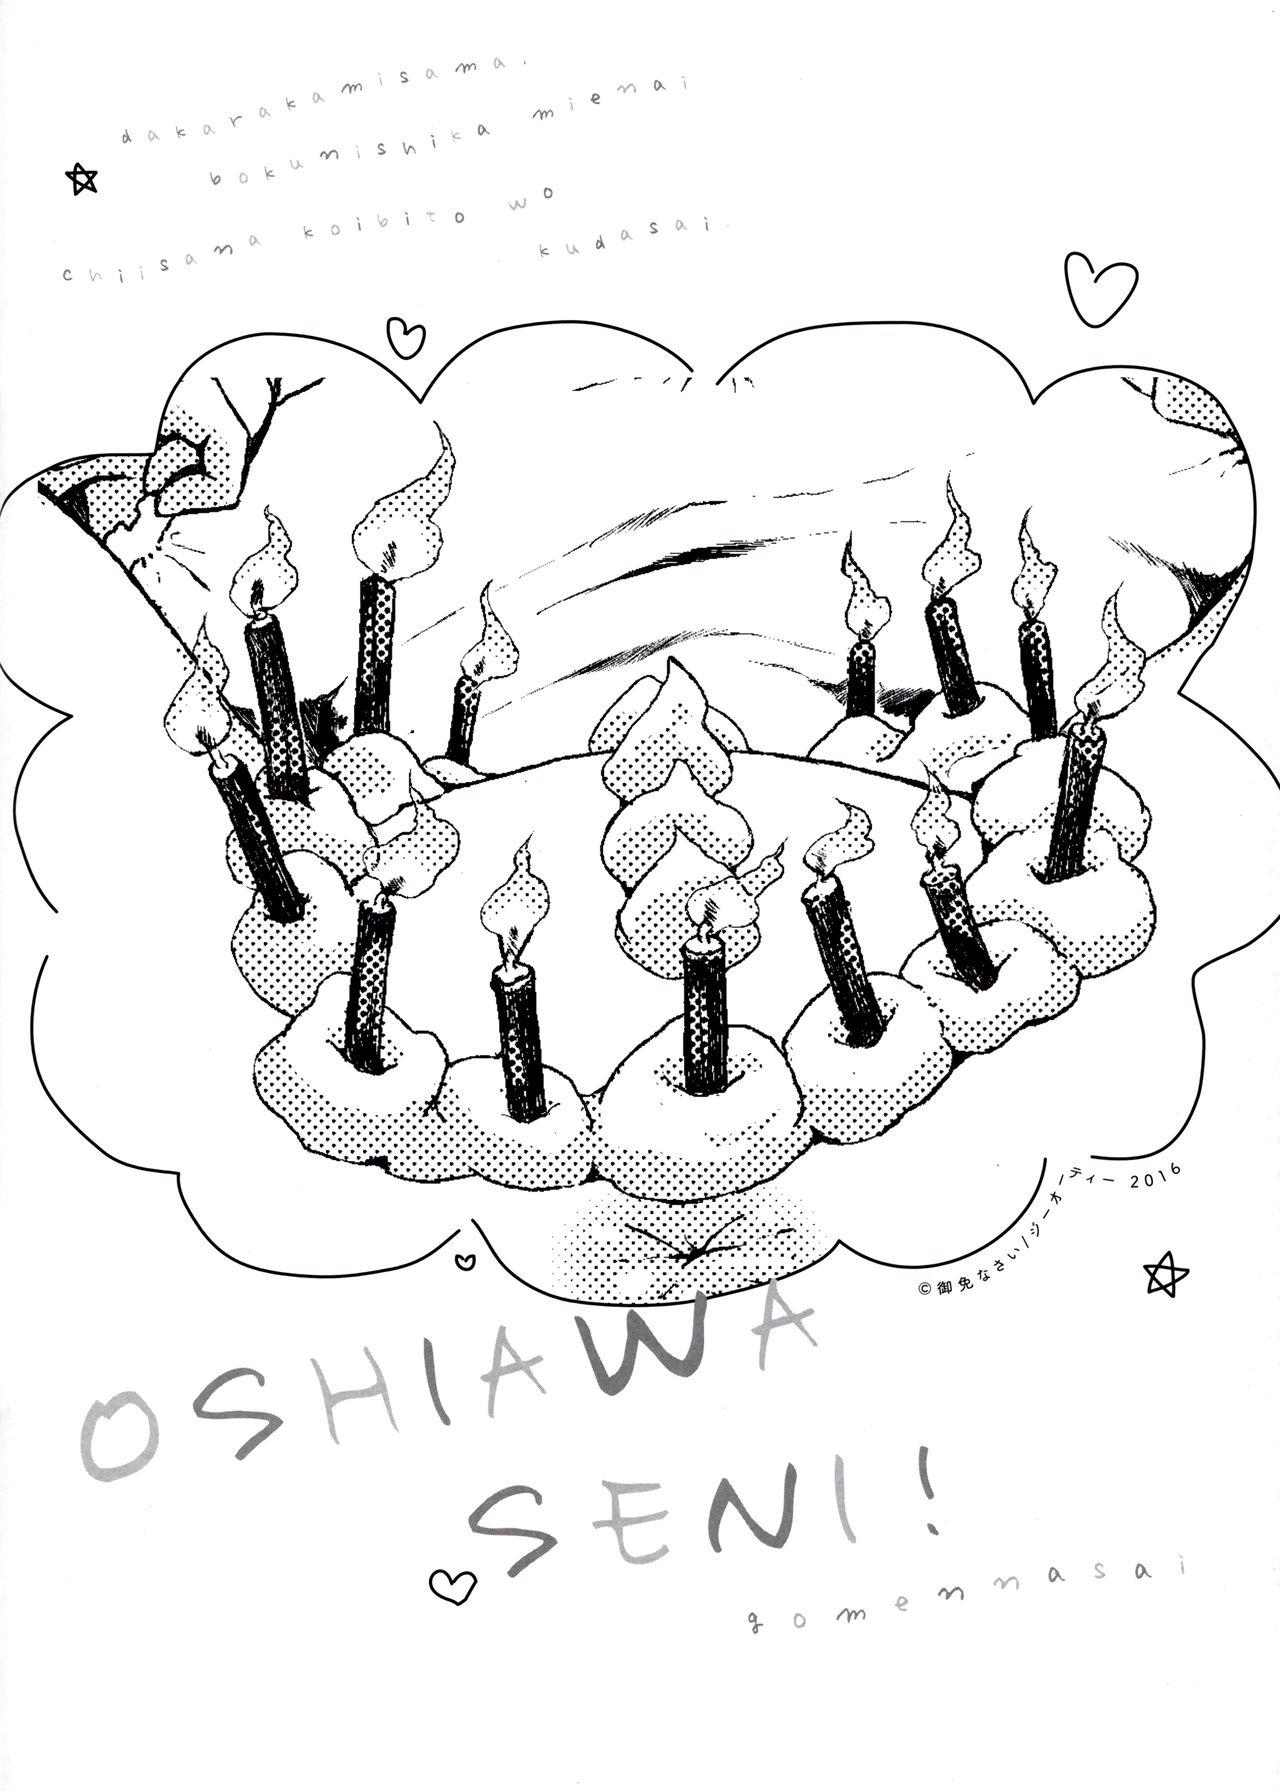 とらのあな特典 未収録漫画冊子 Oshiawaseni! 25